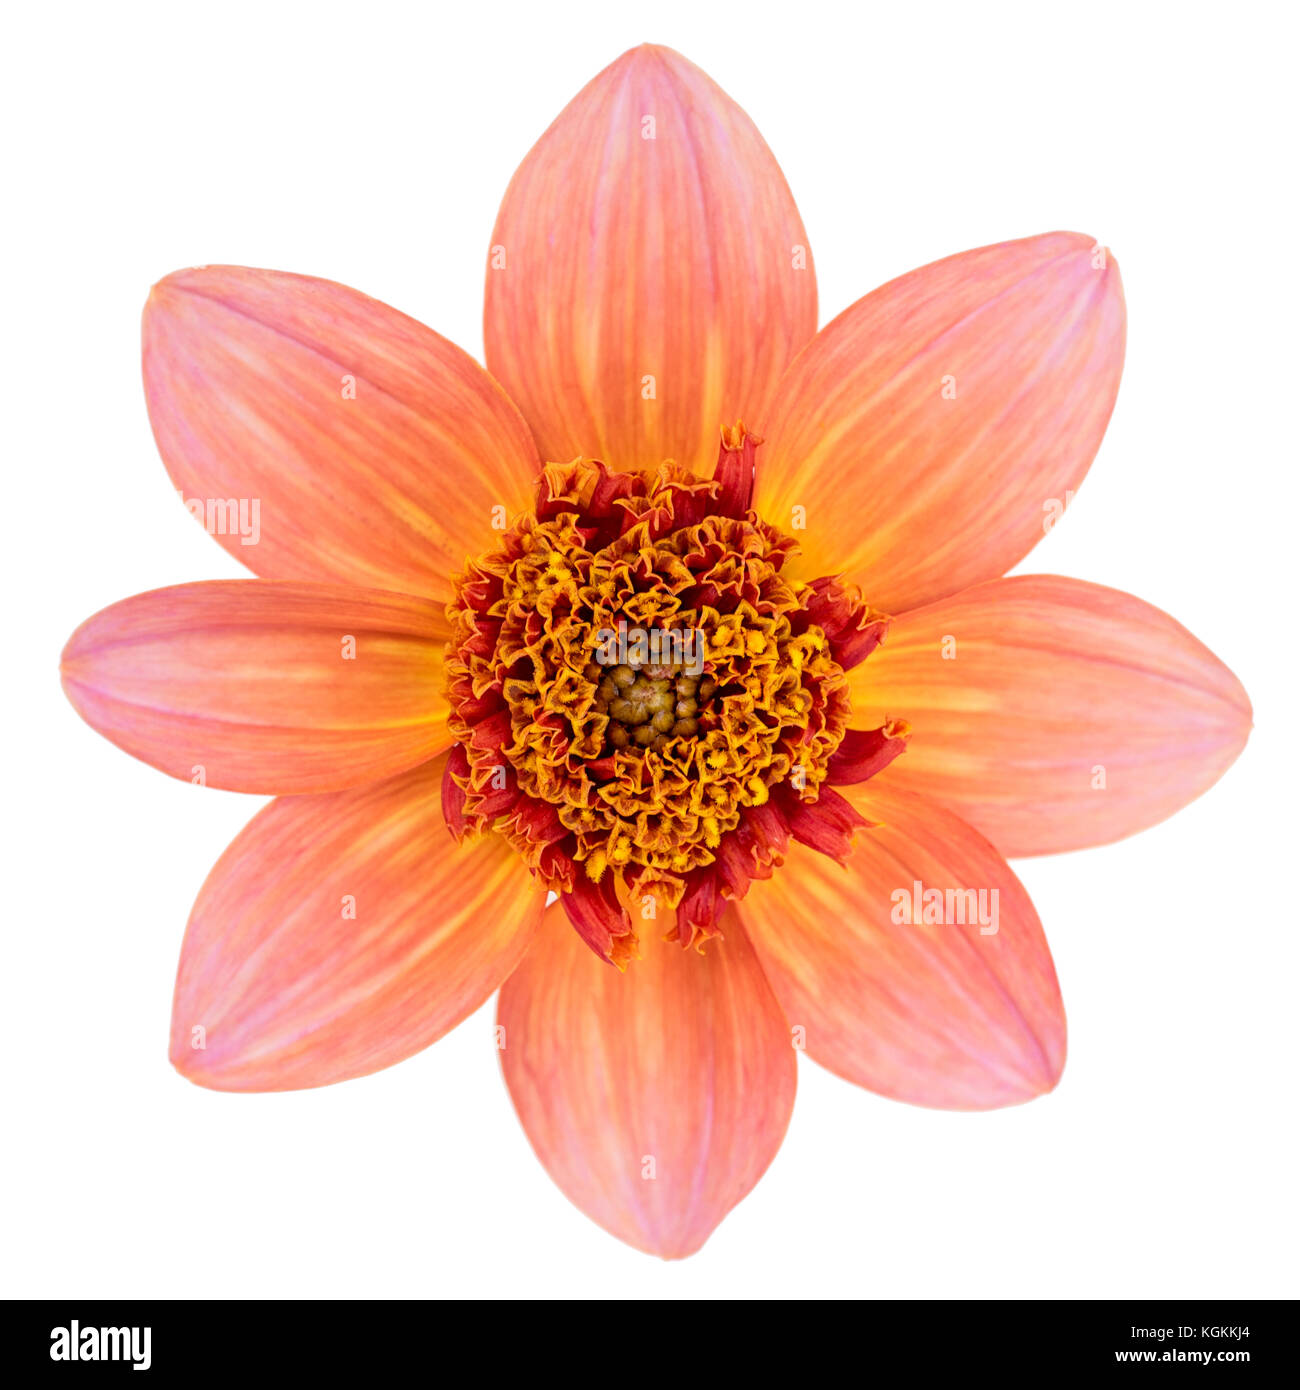 Seule fleur Anémone dahlia var. totalement la mandarine introduit au jardin monde en 2008 et hybridée par Swan River dahlias. Banque D'Images